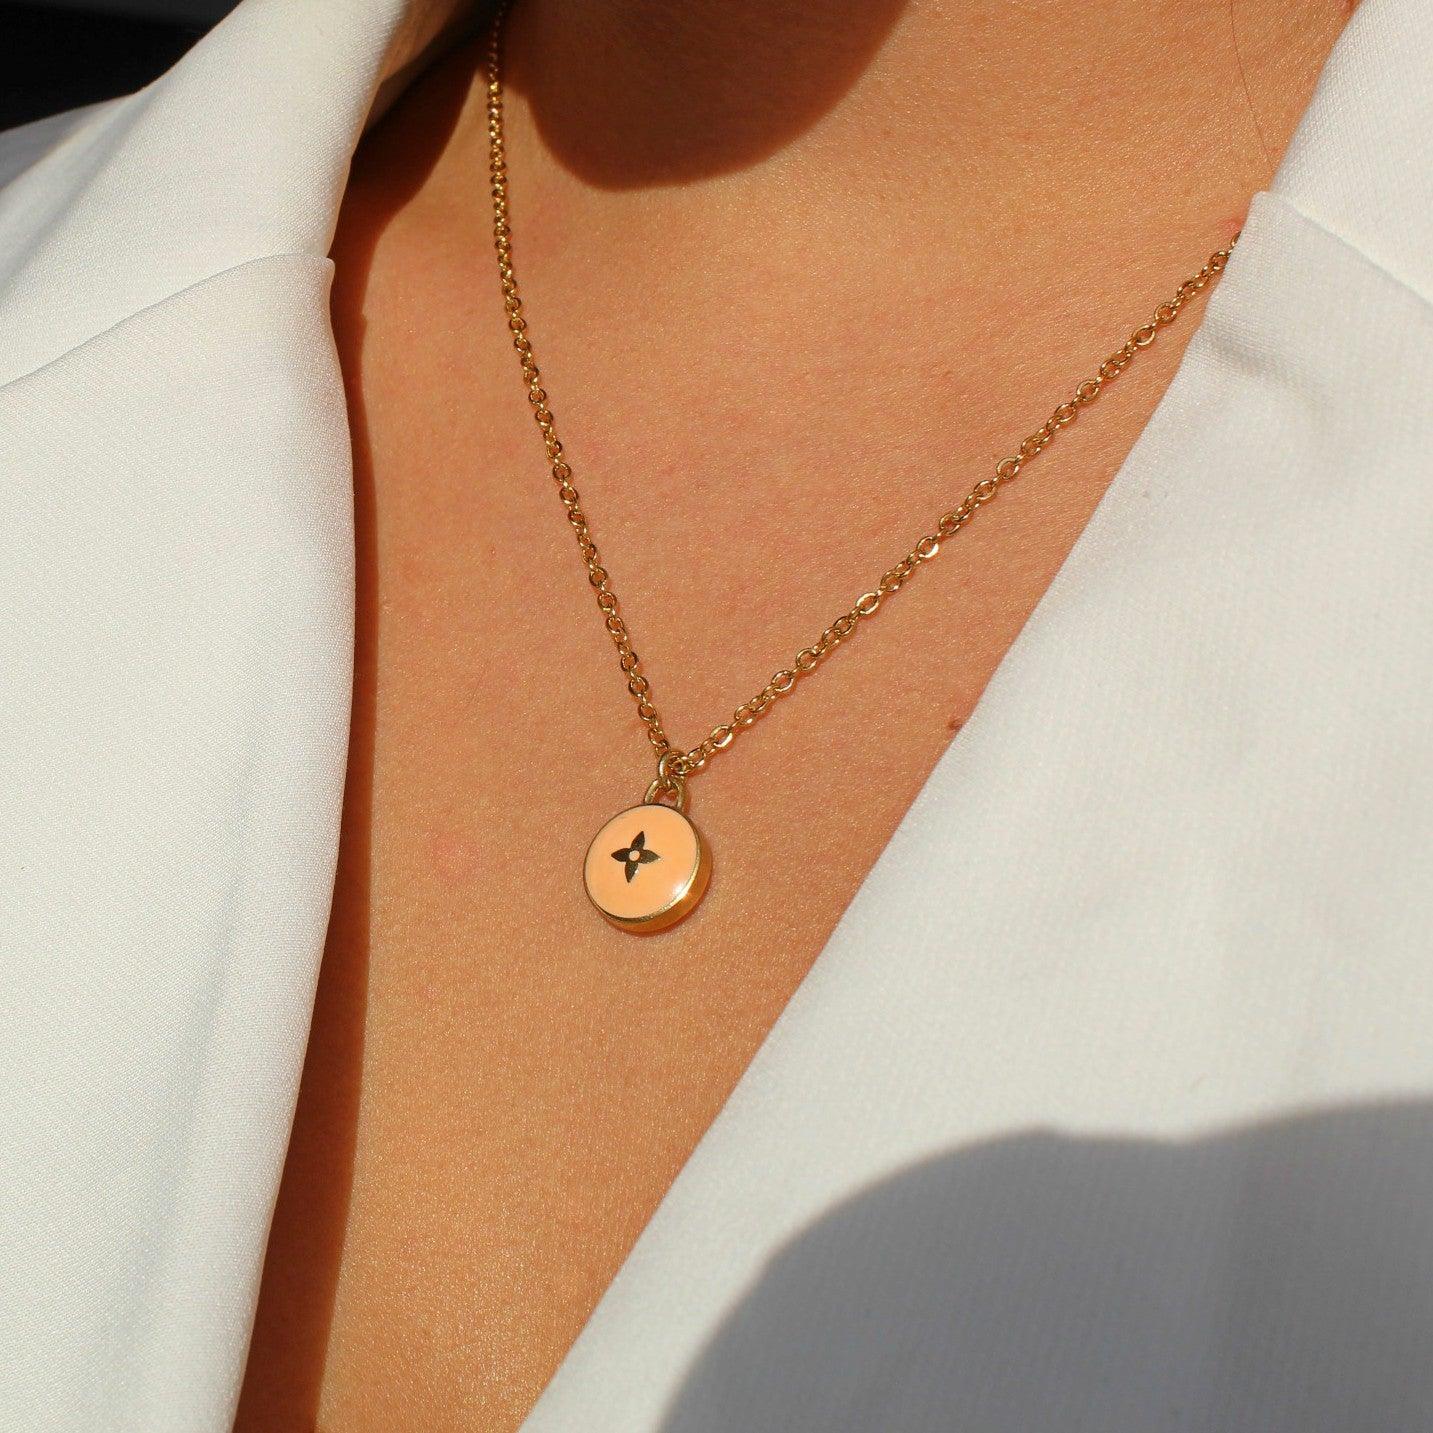 SOLD OUT Rework Vintage Louis Vuitton Pastille LV Charm Necklace